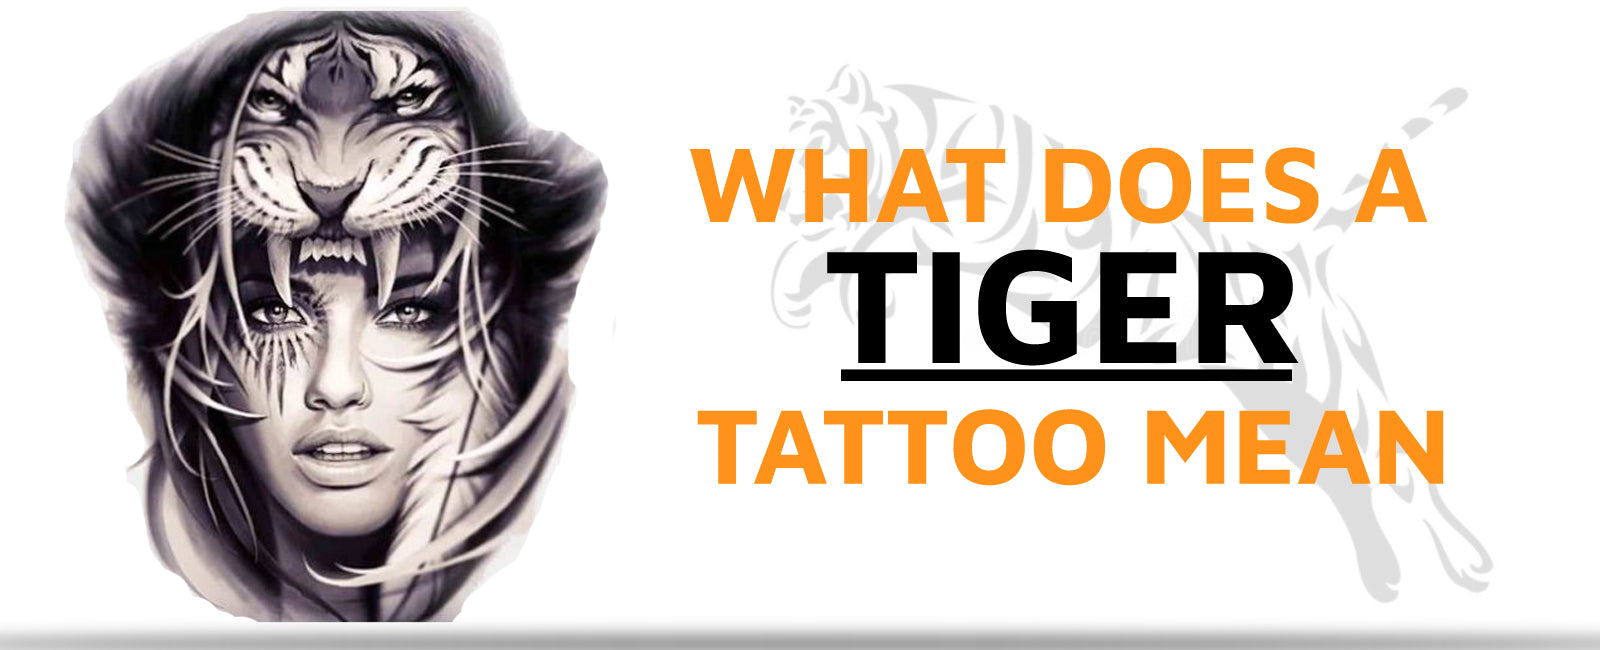 Tiger tattoo, tattoo sketch#1